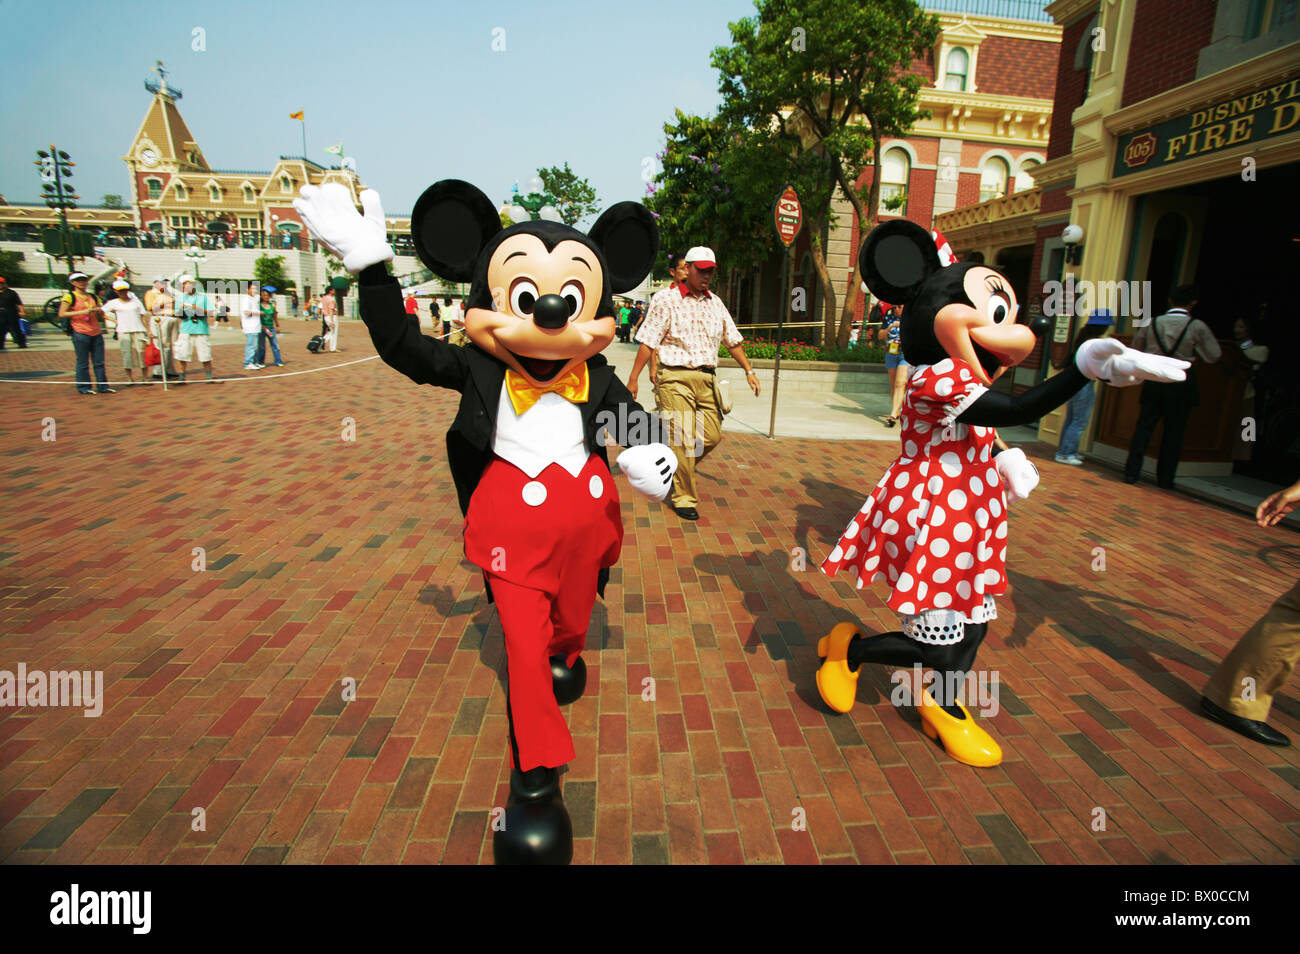 Mickey Mouse and Minnie Mouse welcoming visitors, Main Street, Hong Kong Disneyland, Lantau Island, Hong Kong, China Stock Photo